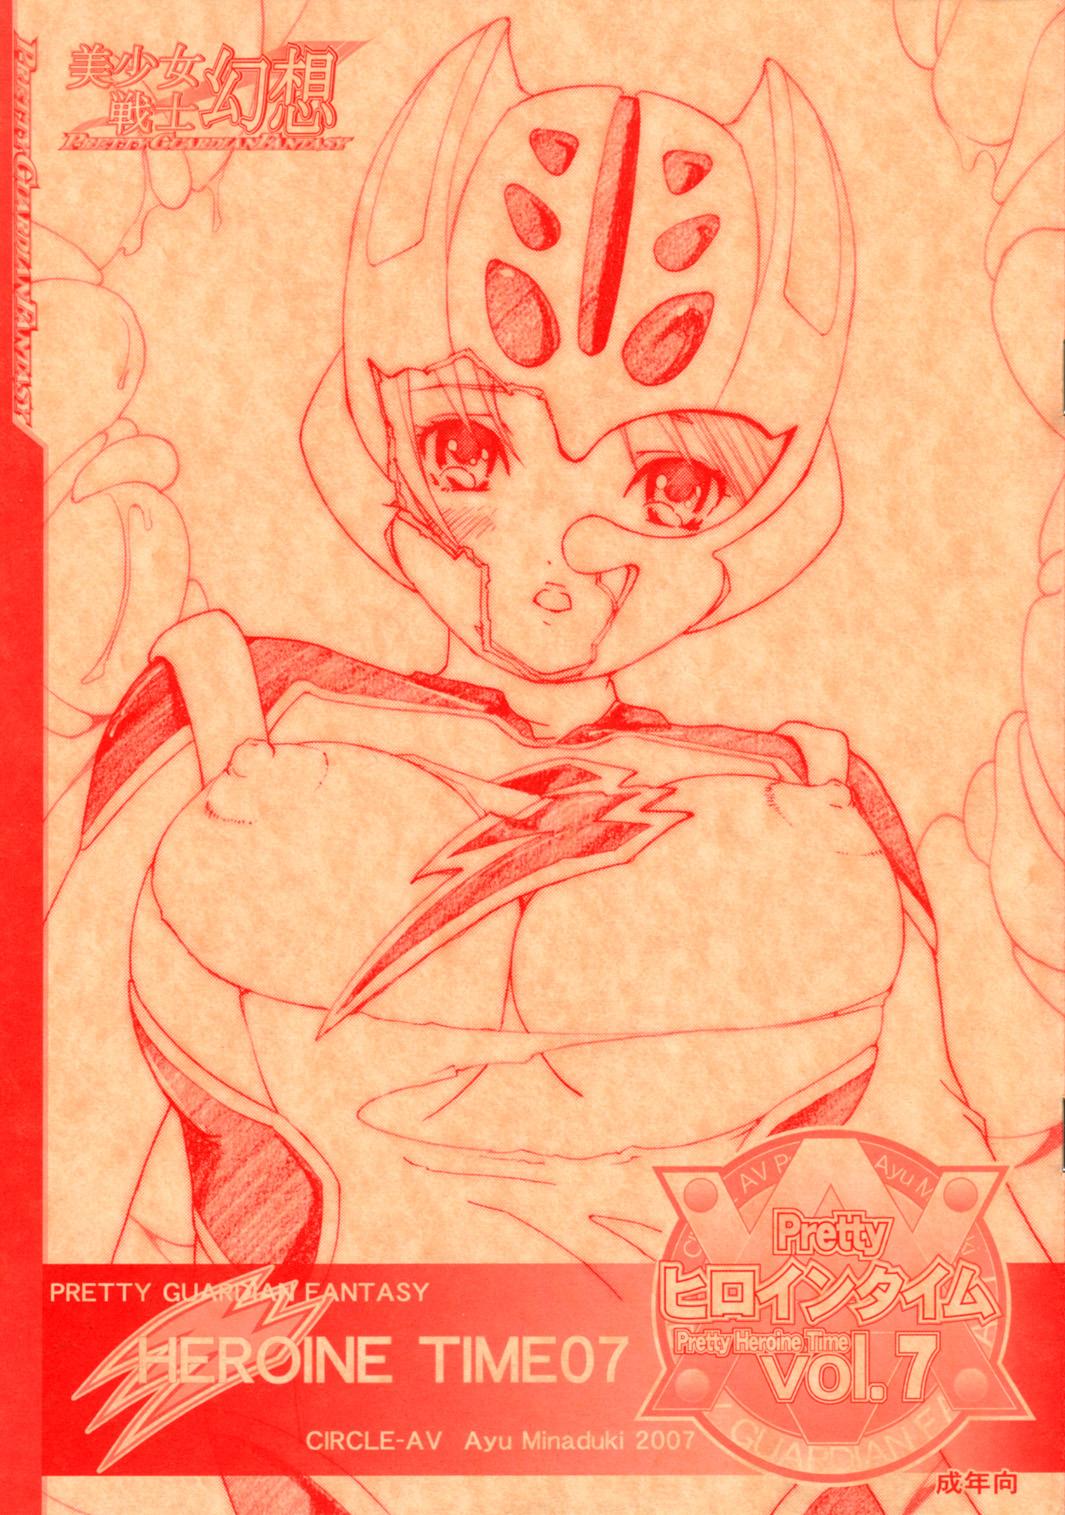 Bishoujo Senshi Gensou Pretty Heroine Time vol.7 0